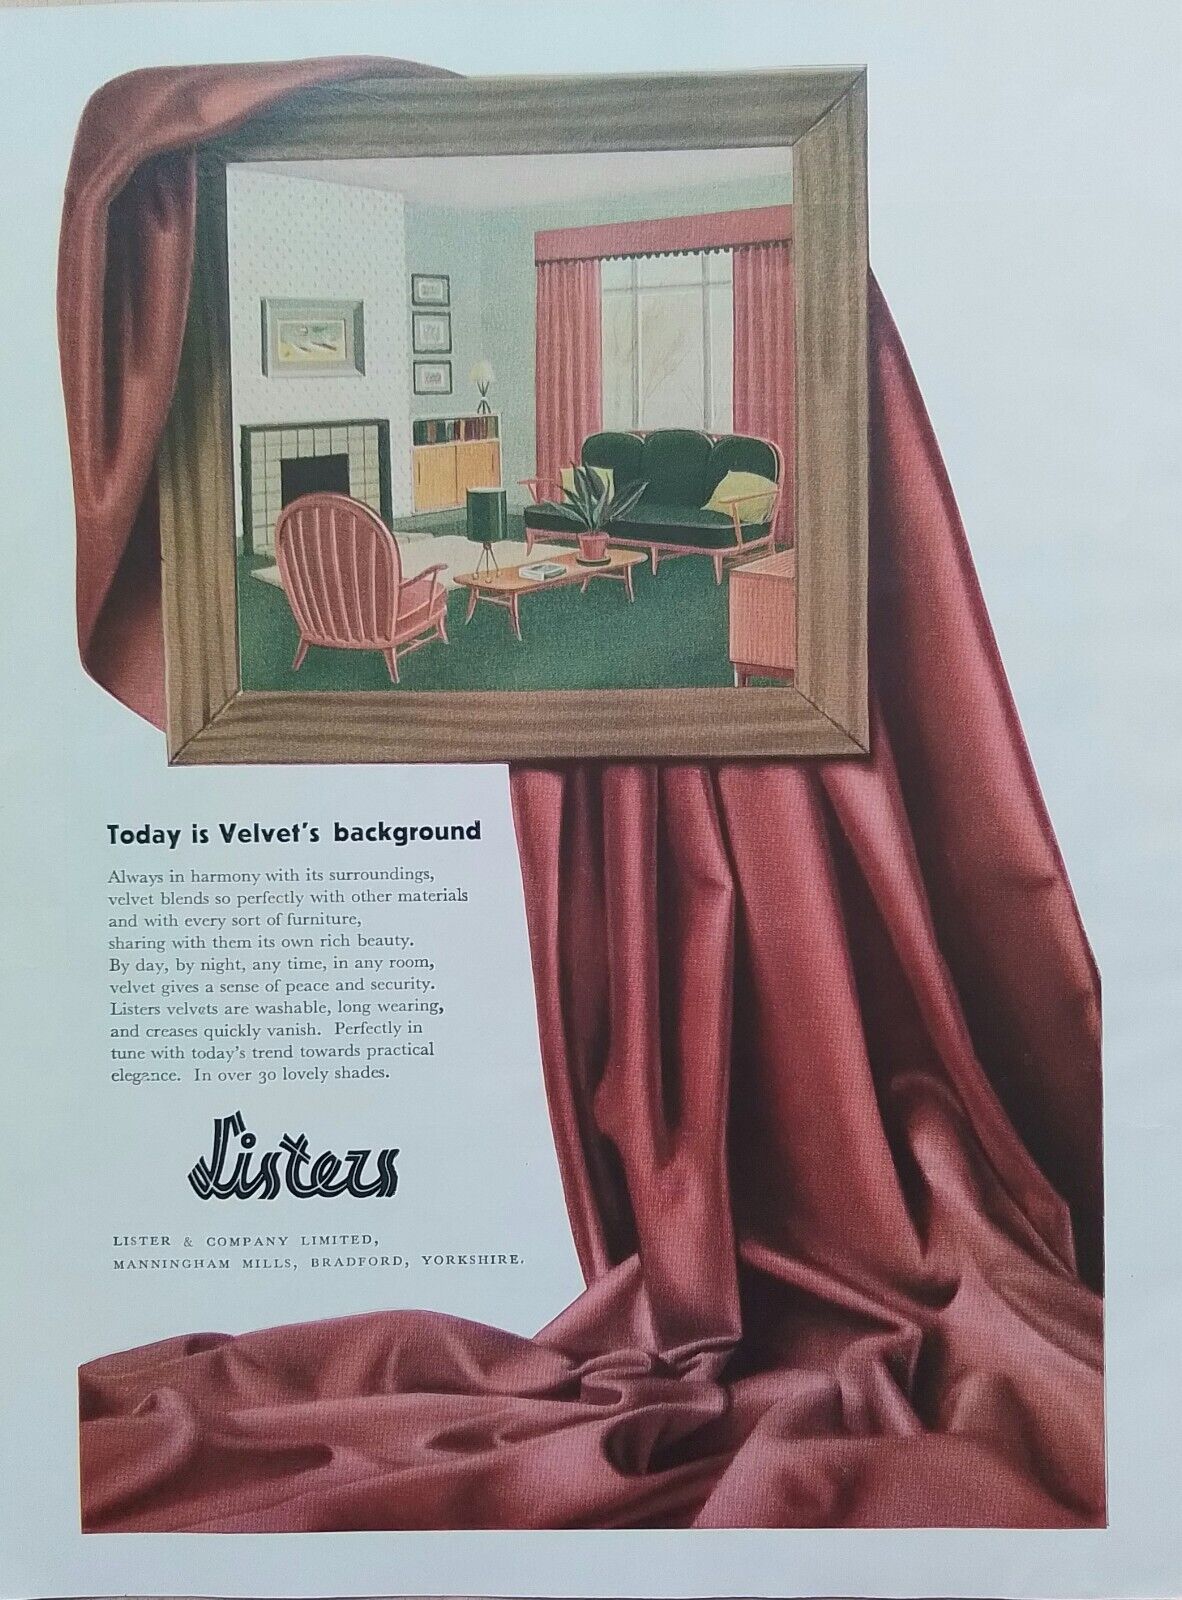 Original vintage advertisement from Listers Velvet Bradford 1956 House & Gardens